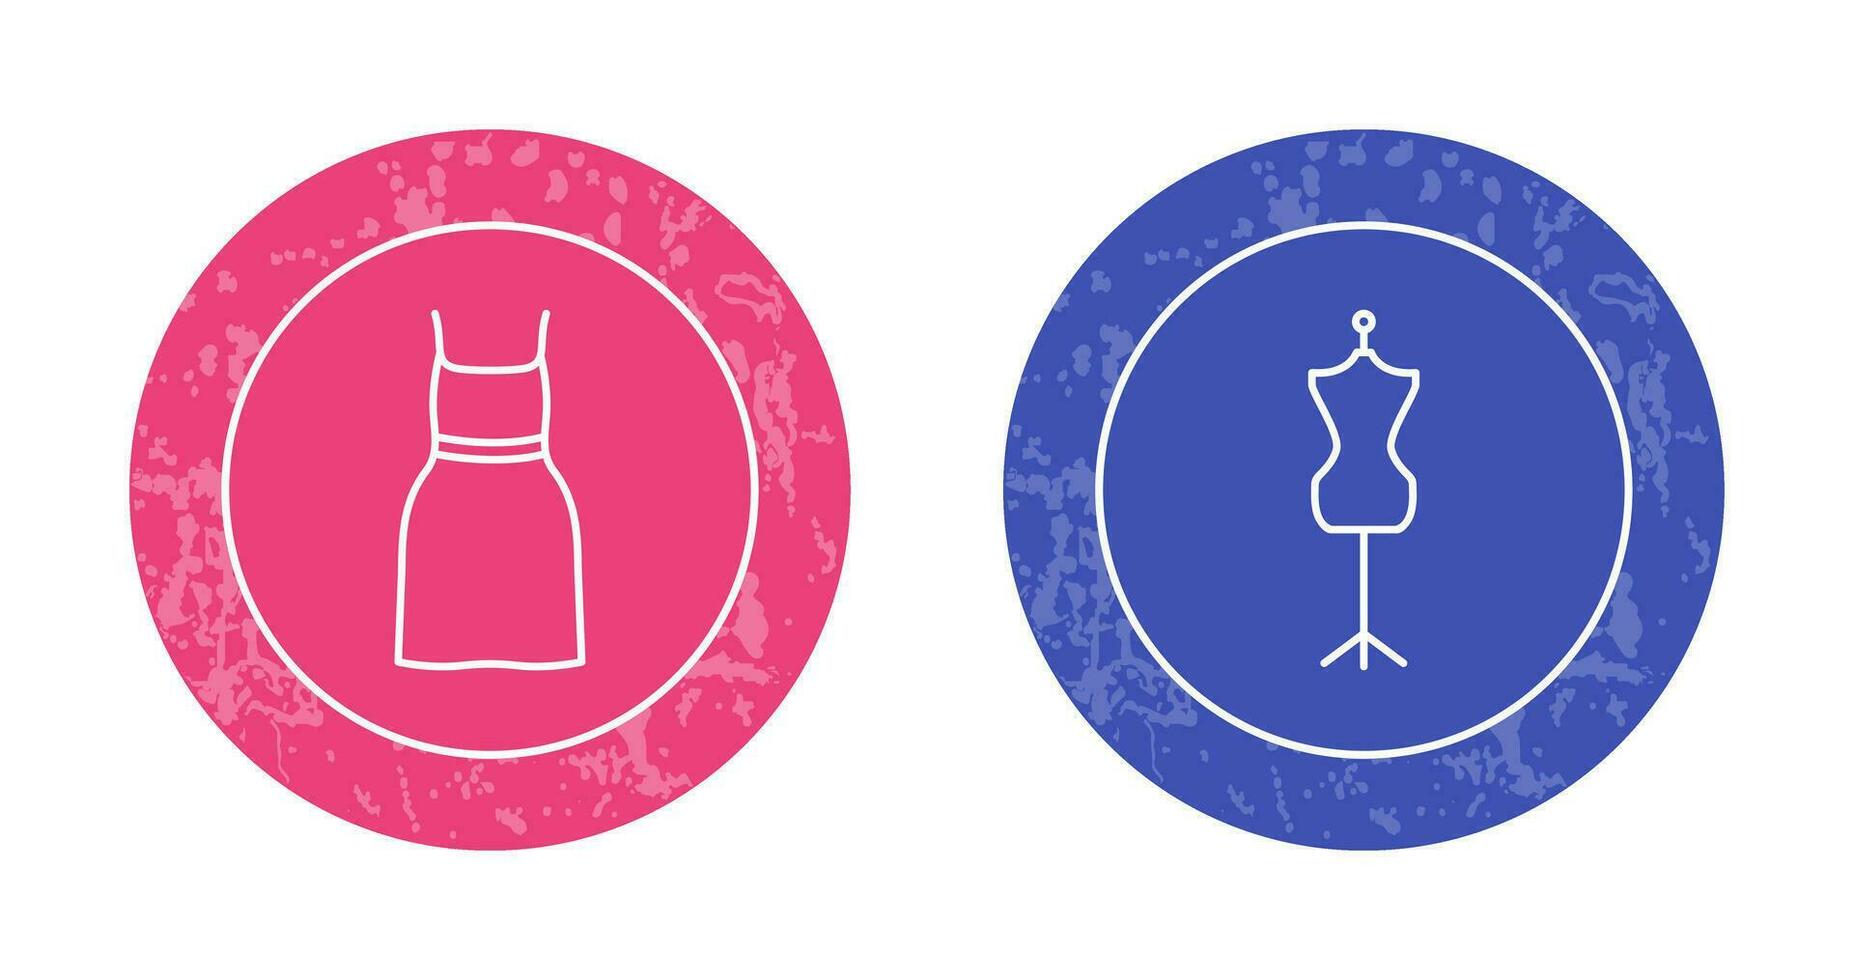 cocktail klänning och klänning hållare ikon vektor